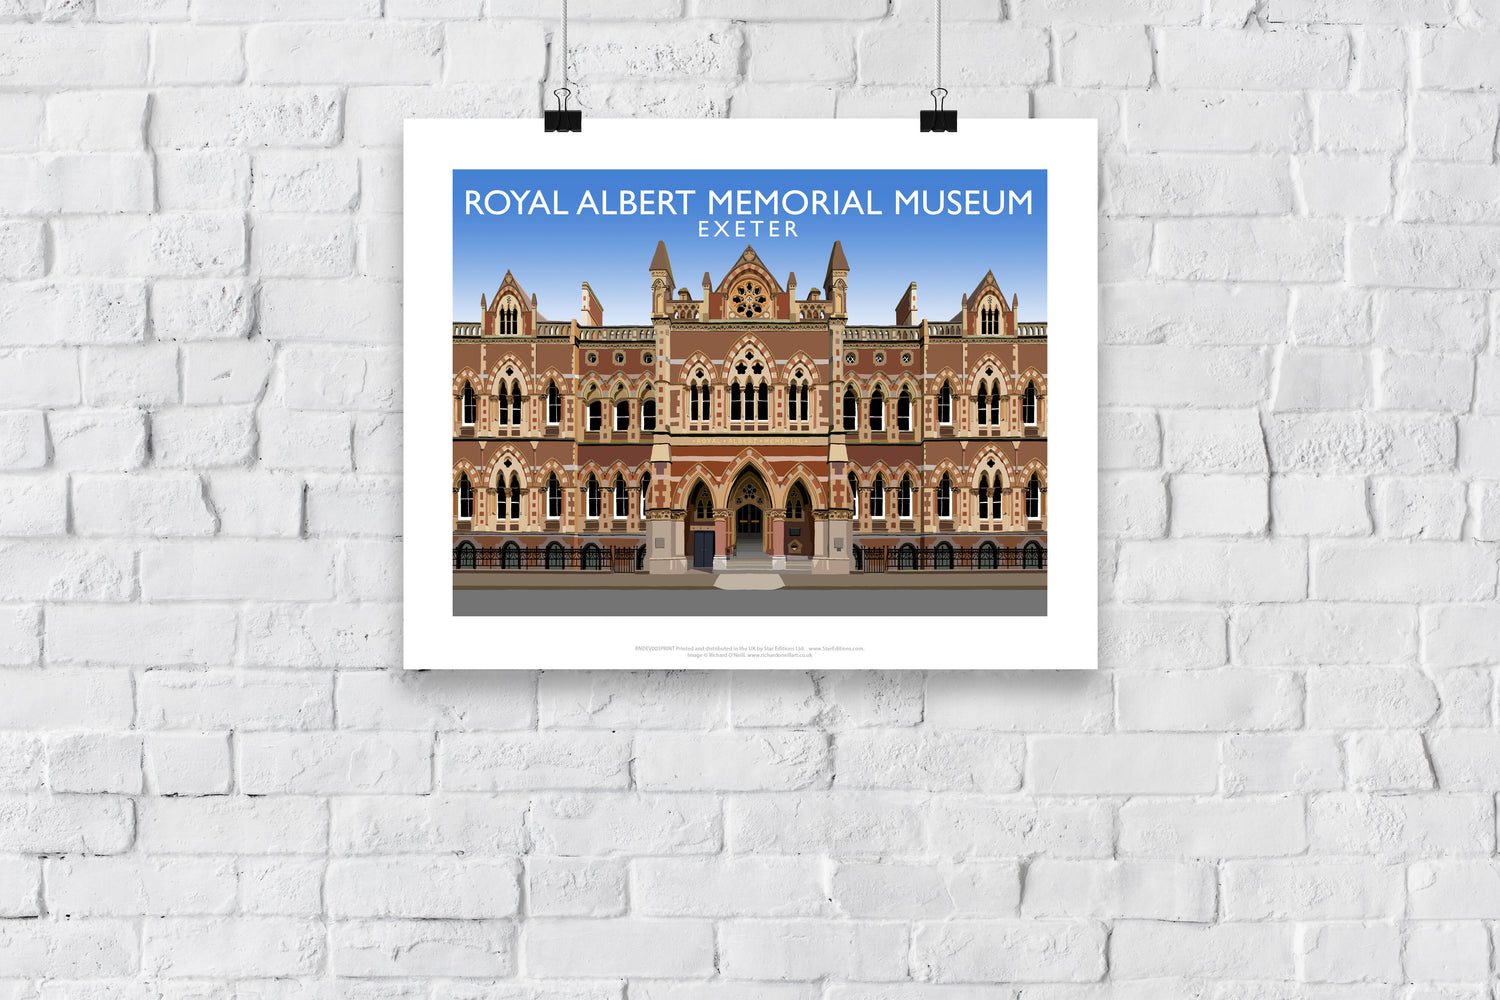 Royal Albert Memorial Museum, Exeter, Devon - Art Print